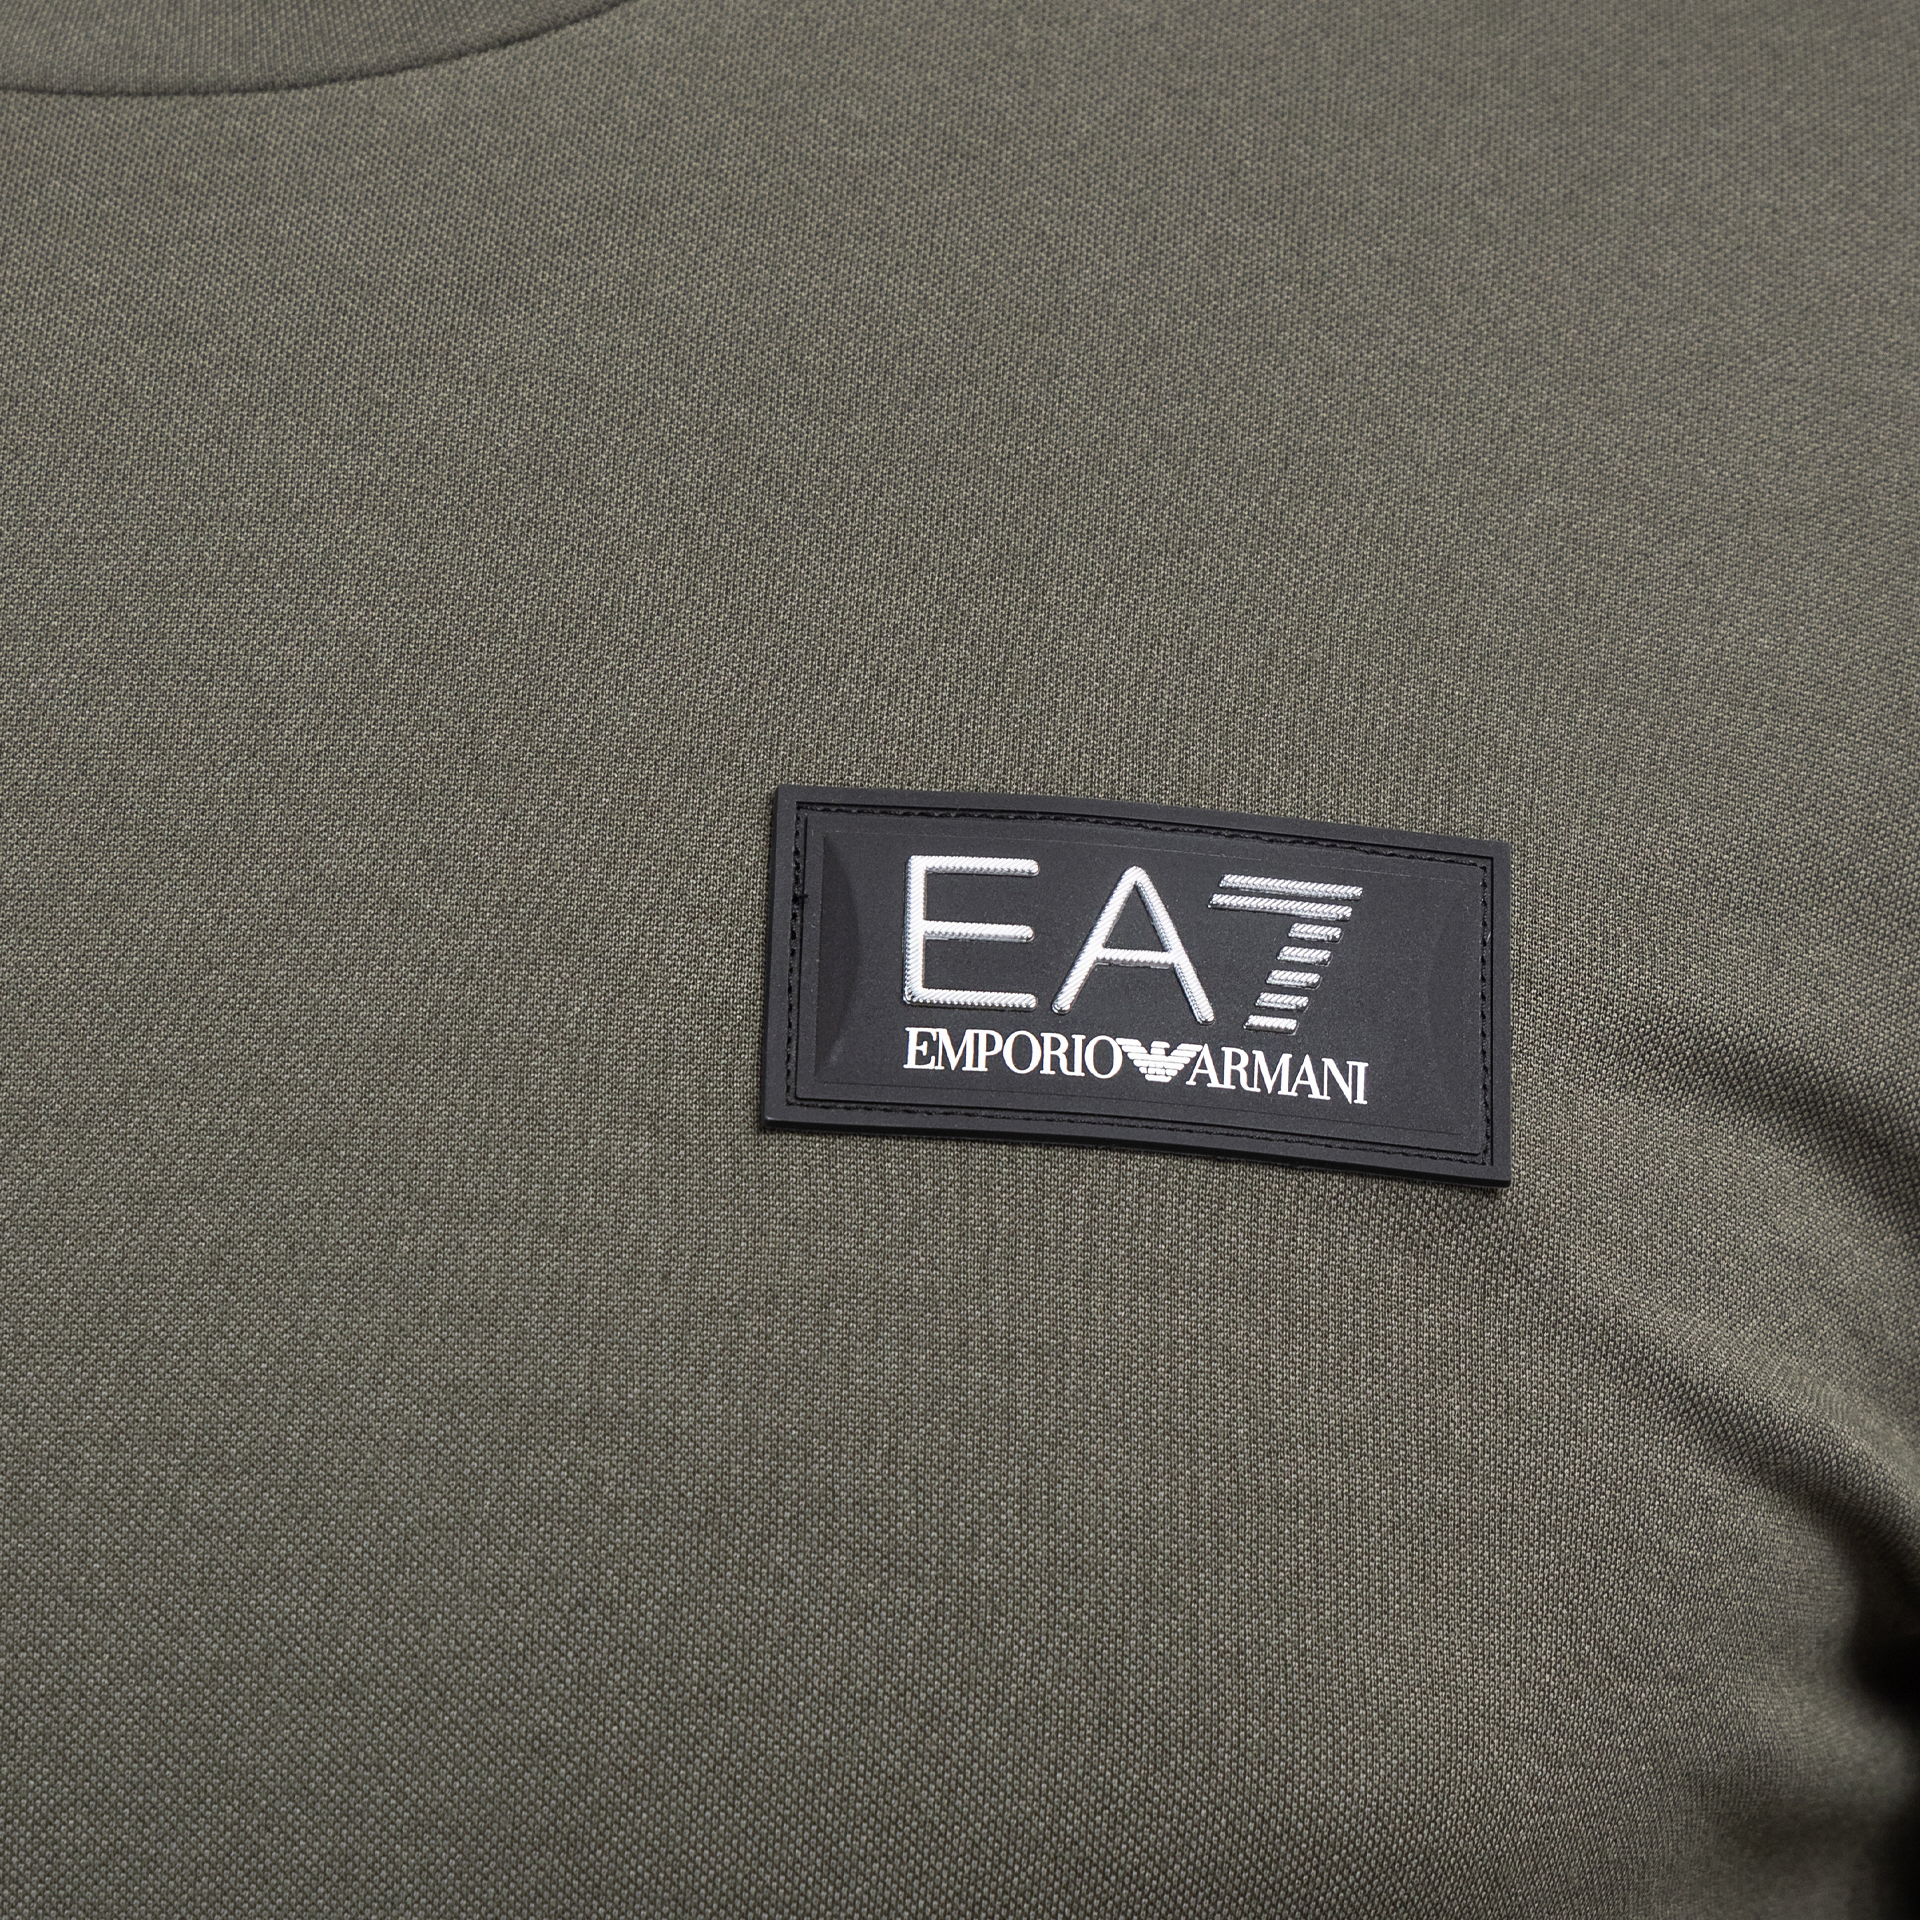 Koszulka męska EA7 Emporio Armani